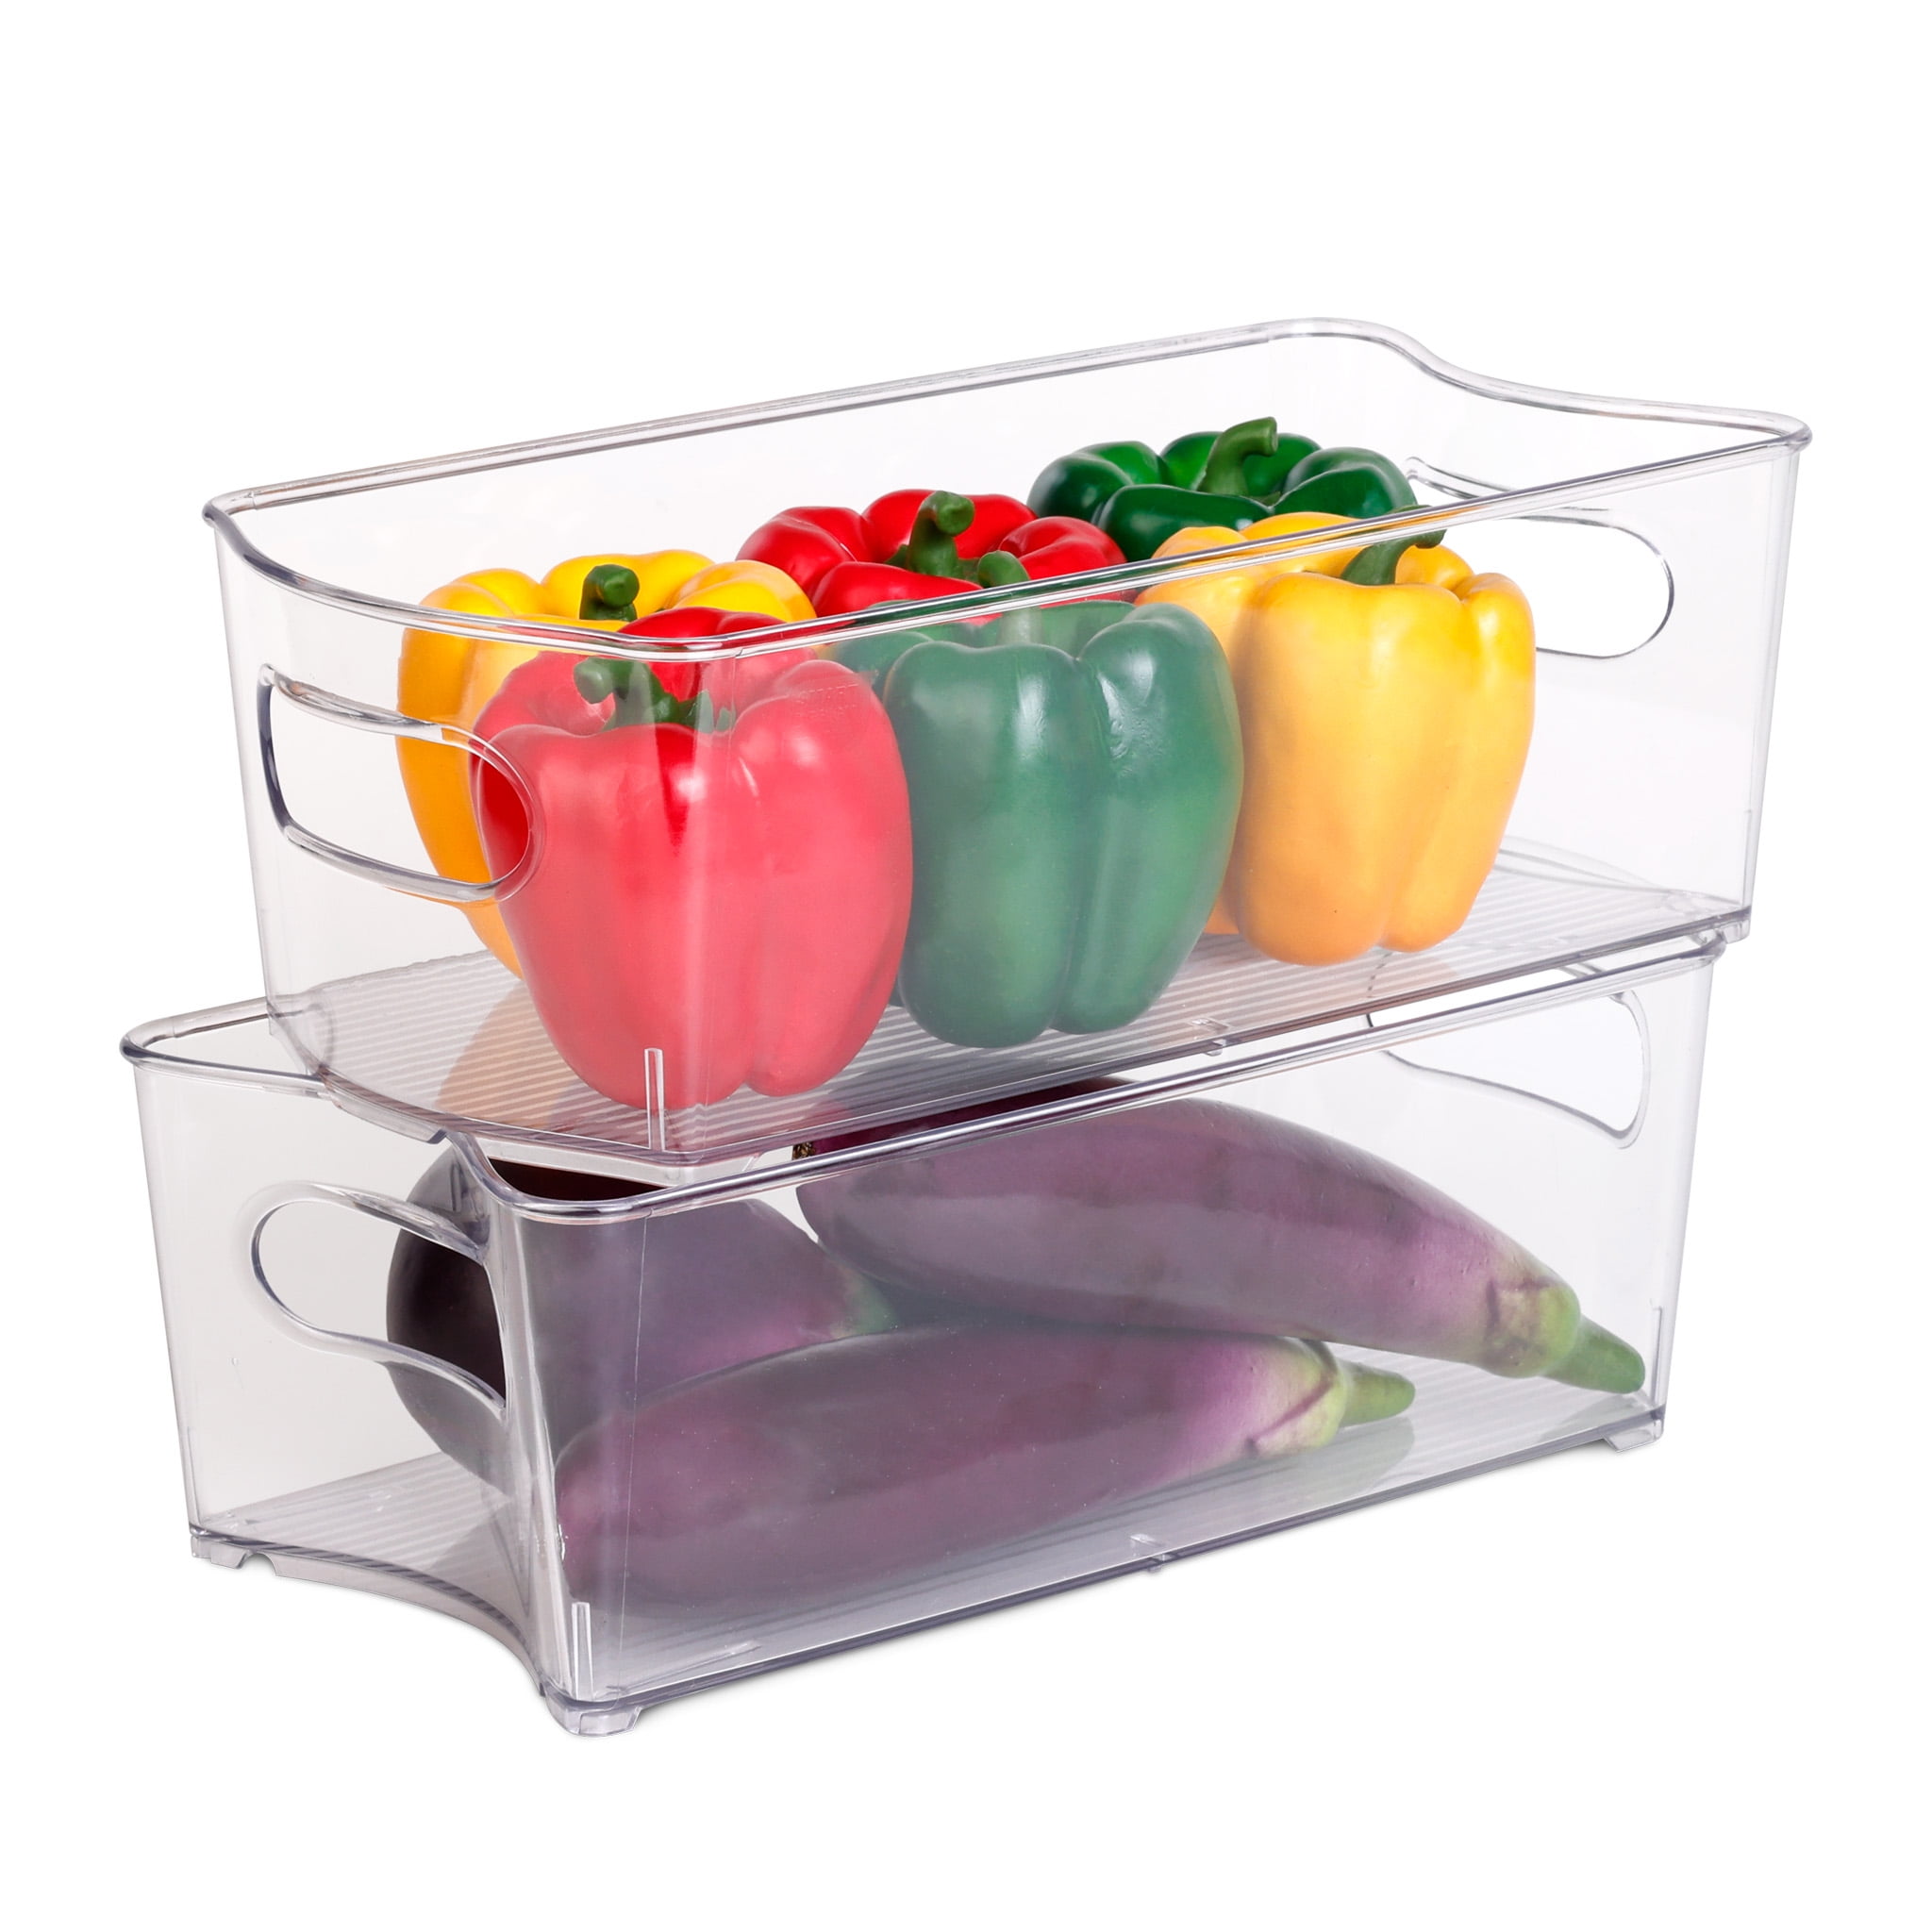 Mdesign Vented Fridge Storage Bin Basket For Fruit, Vegetables, 11 X 6 X 3,  4 Pack - Clear : Target